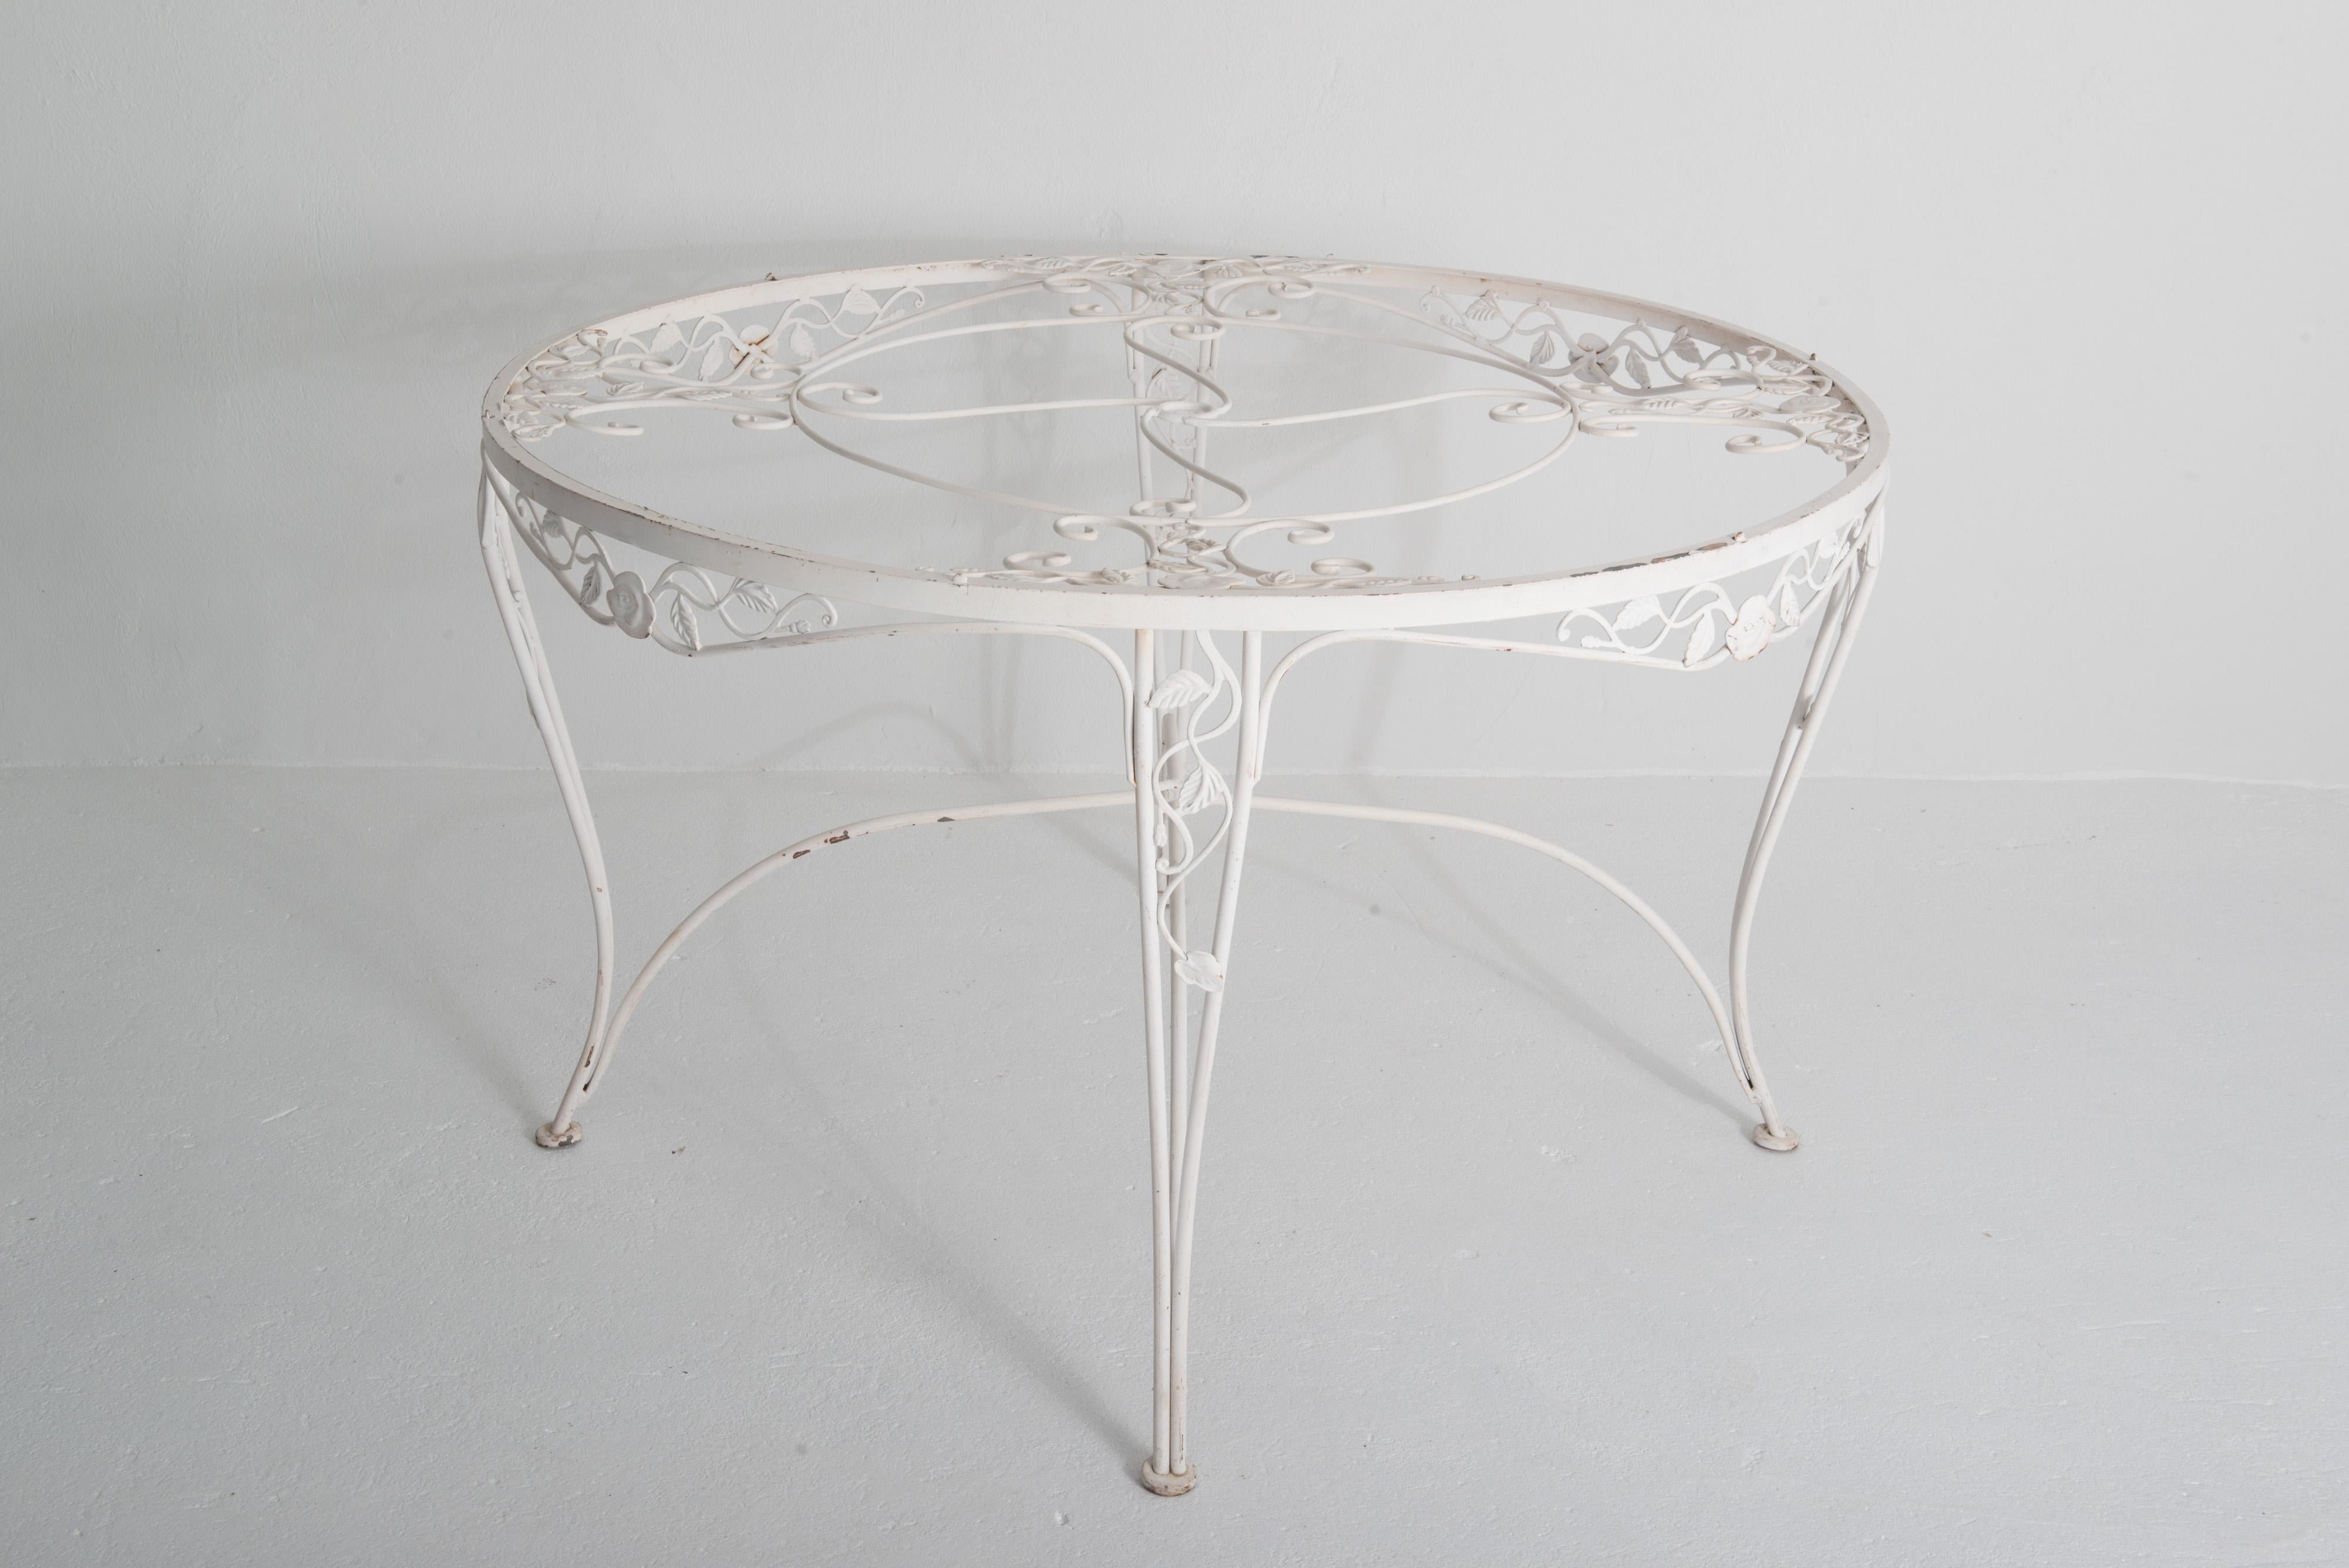 Il s'agit d'une table de salle à manger ronde classique en fer forgé Chantilly Rose de Woodard avec un nouveau plateau en verre rond d'un quart de pouce d'épaisseur taillé sur mesure. La table est bien fabriquée et de bonne qualité.
Woodard, une